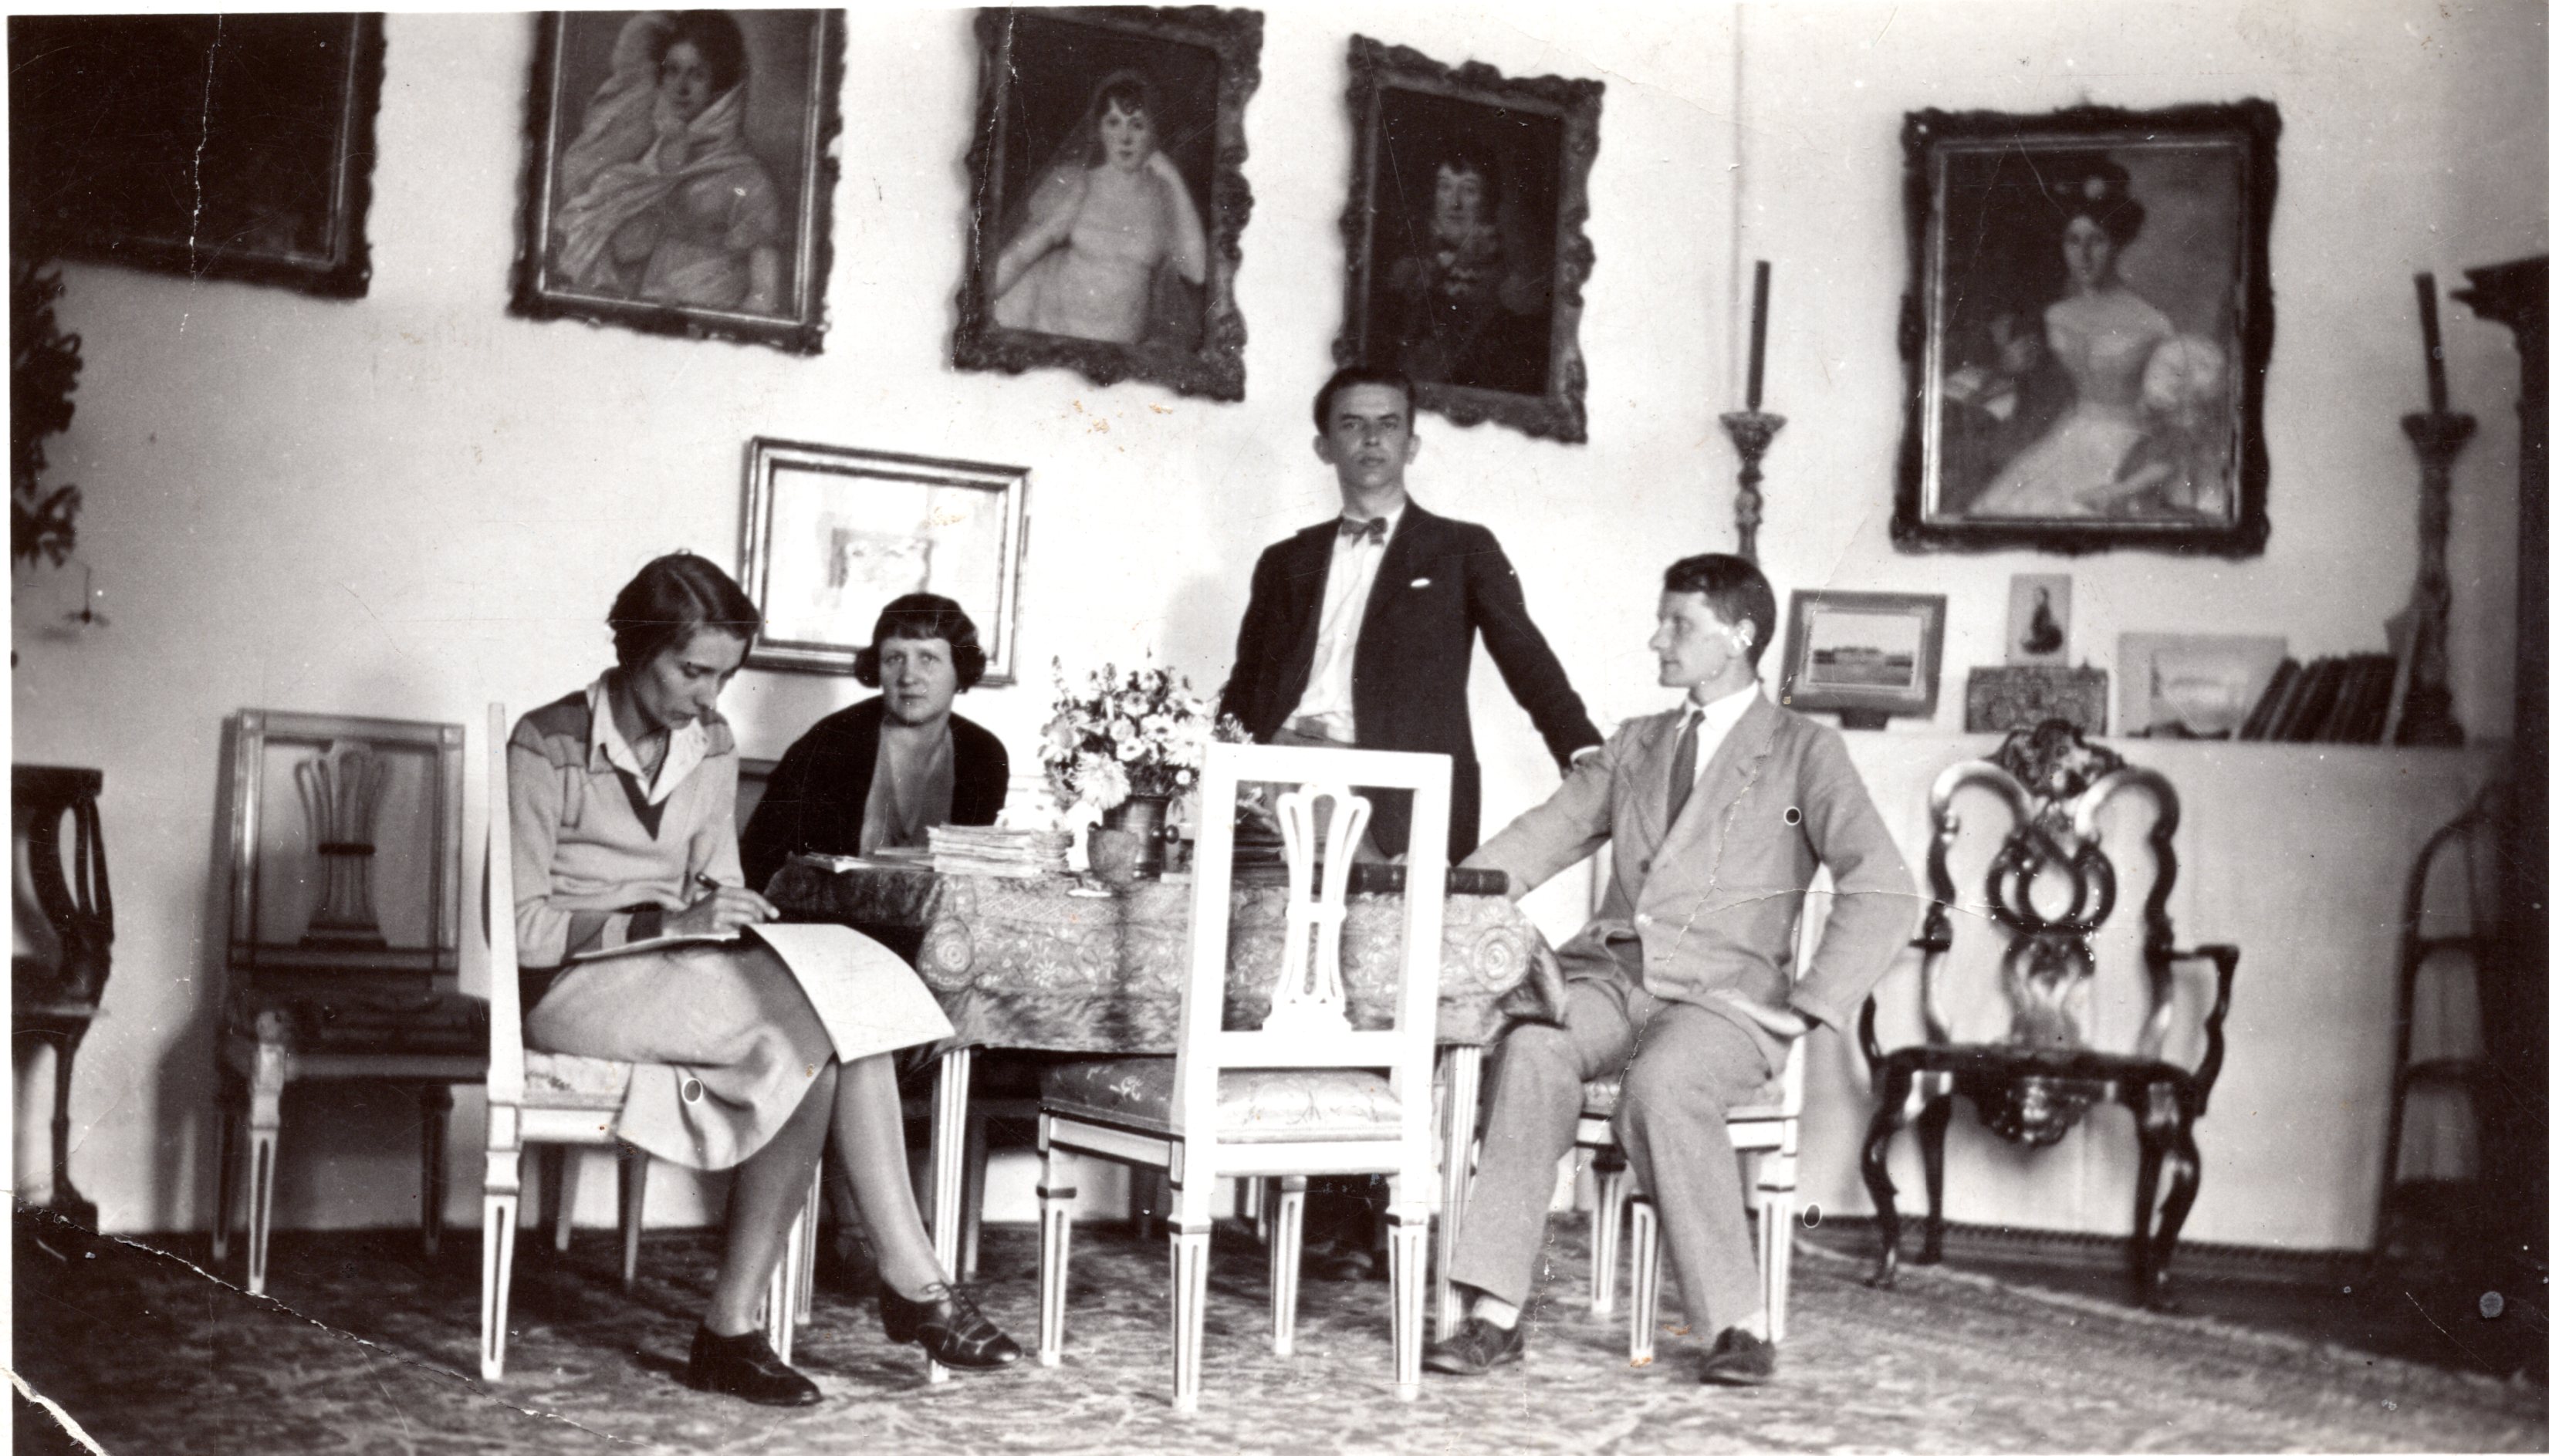 Pałac w Rudkach, od prawej: Piotr Potworowski, Jan Cybis, Hanna Rudzka-Cybisowa, Magdalena Mańkowska, ok. 1930-1935, fotografia archiwalna